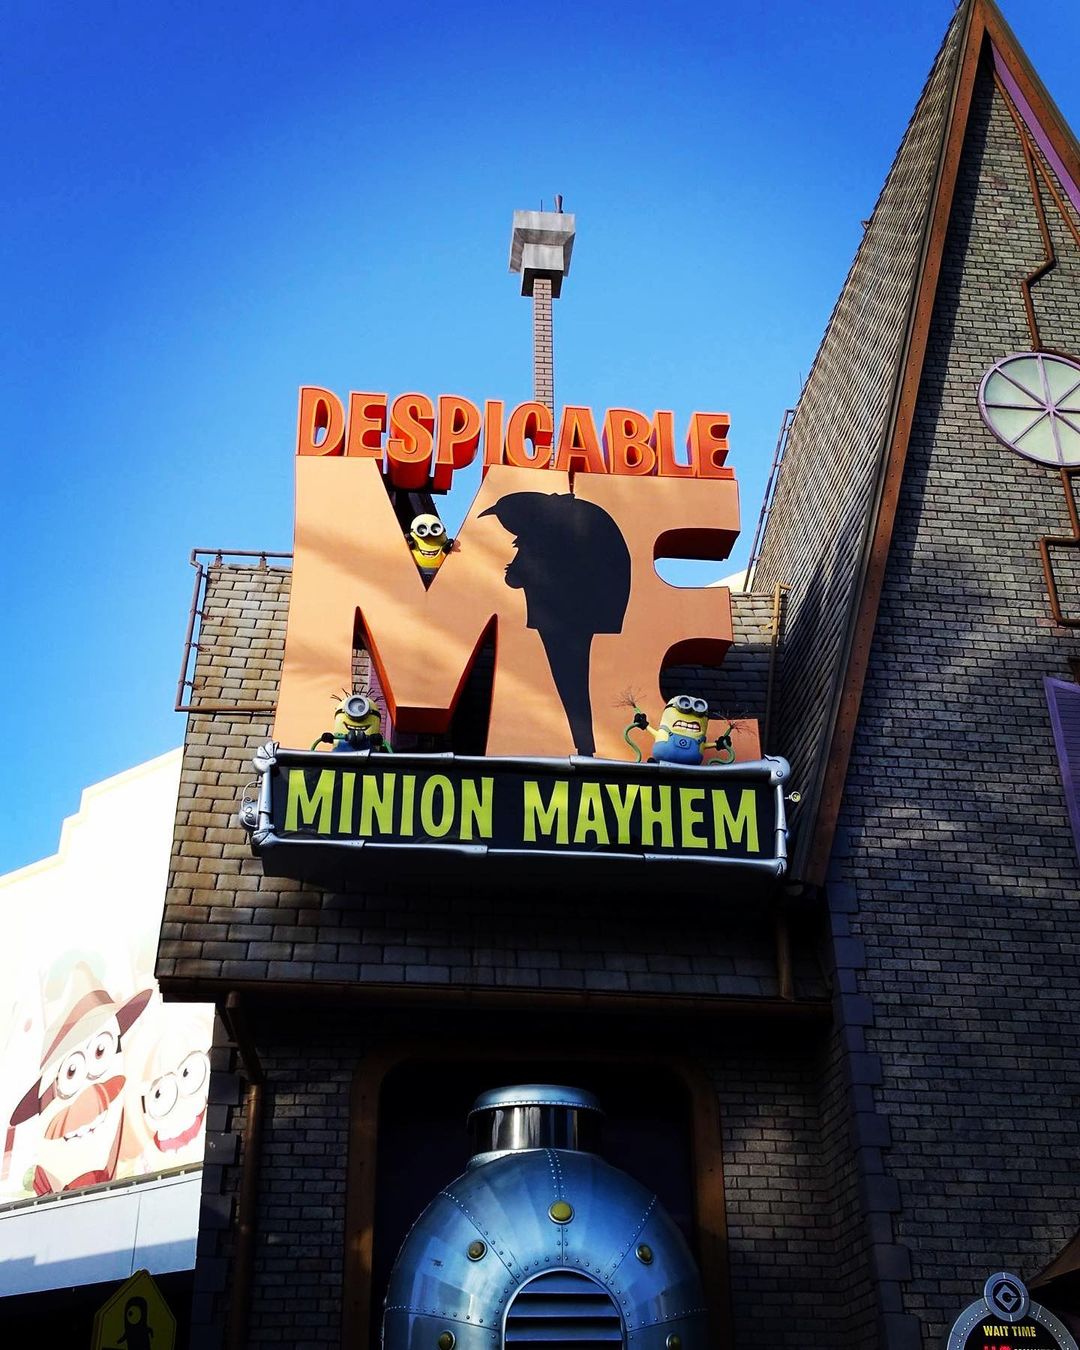 Despicable Me Minion Mayhem - Atração da Universal Studios